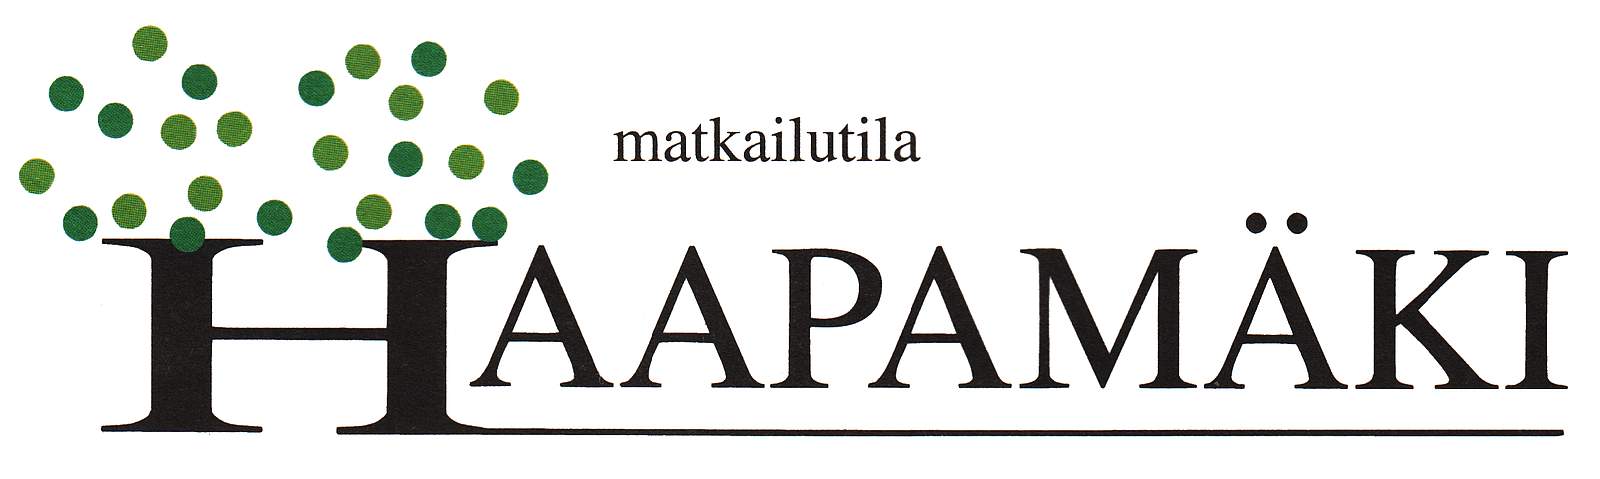 Matkailutila Haapamäki logo